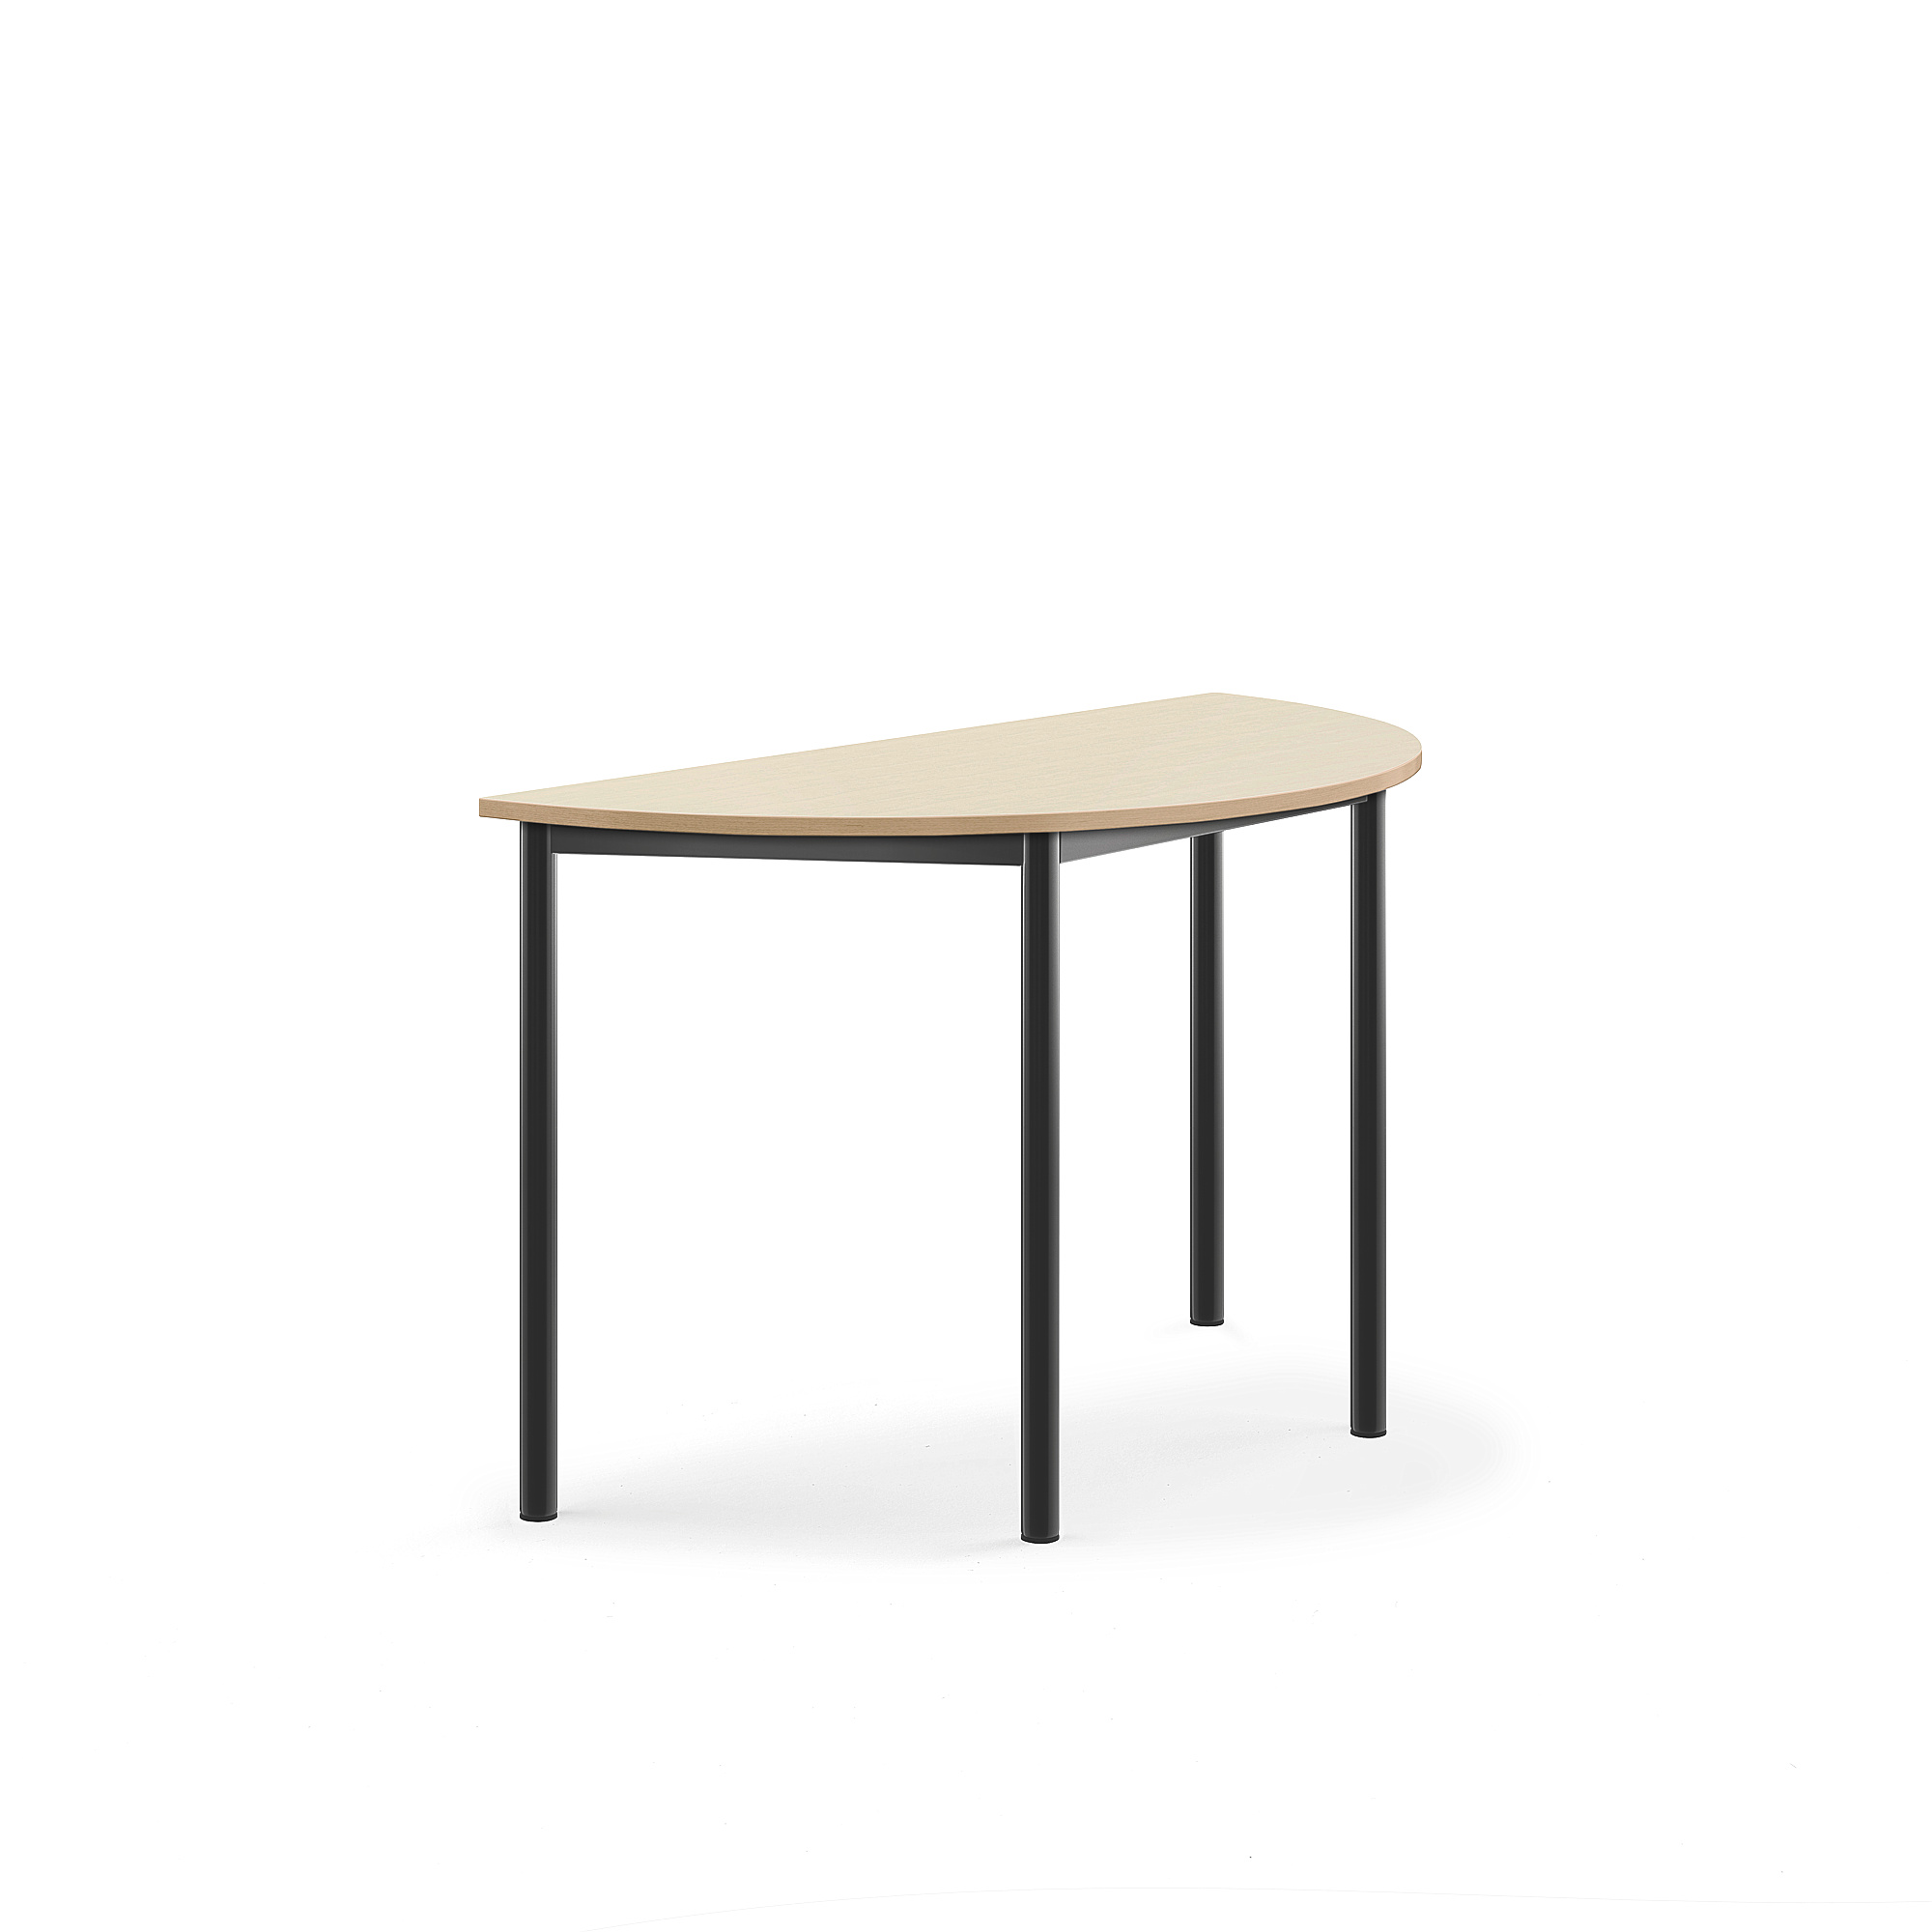 Stůl SONITUS, půlkruh, 1200x600x720 mm, antracitově šedé nohy, HPL deska tlumící hluk, bříza